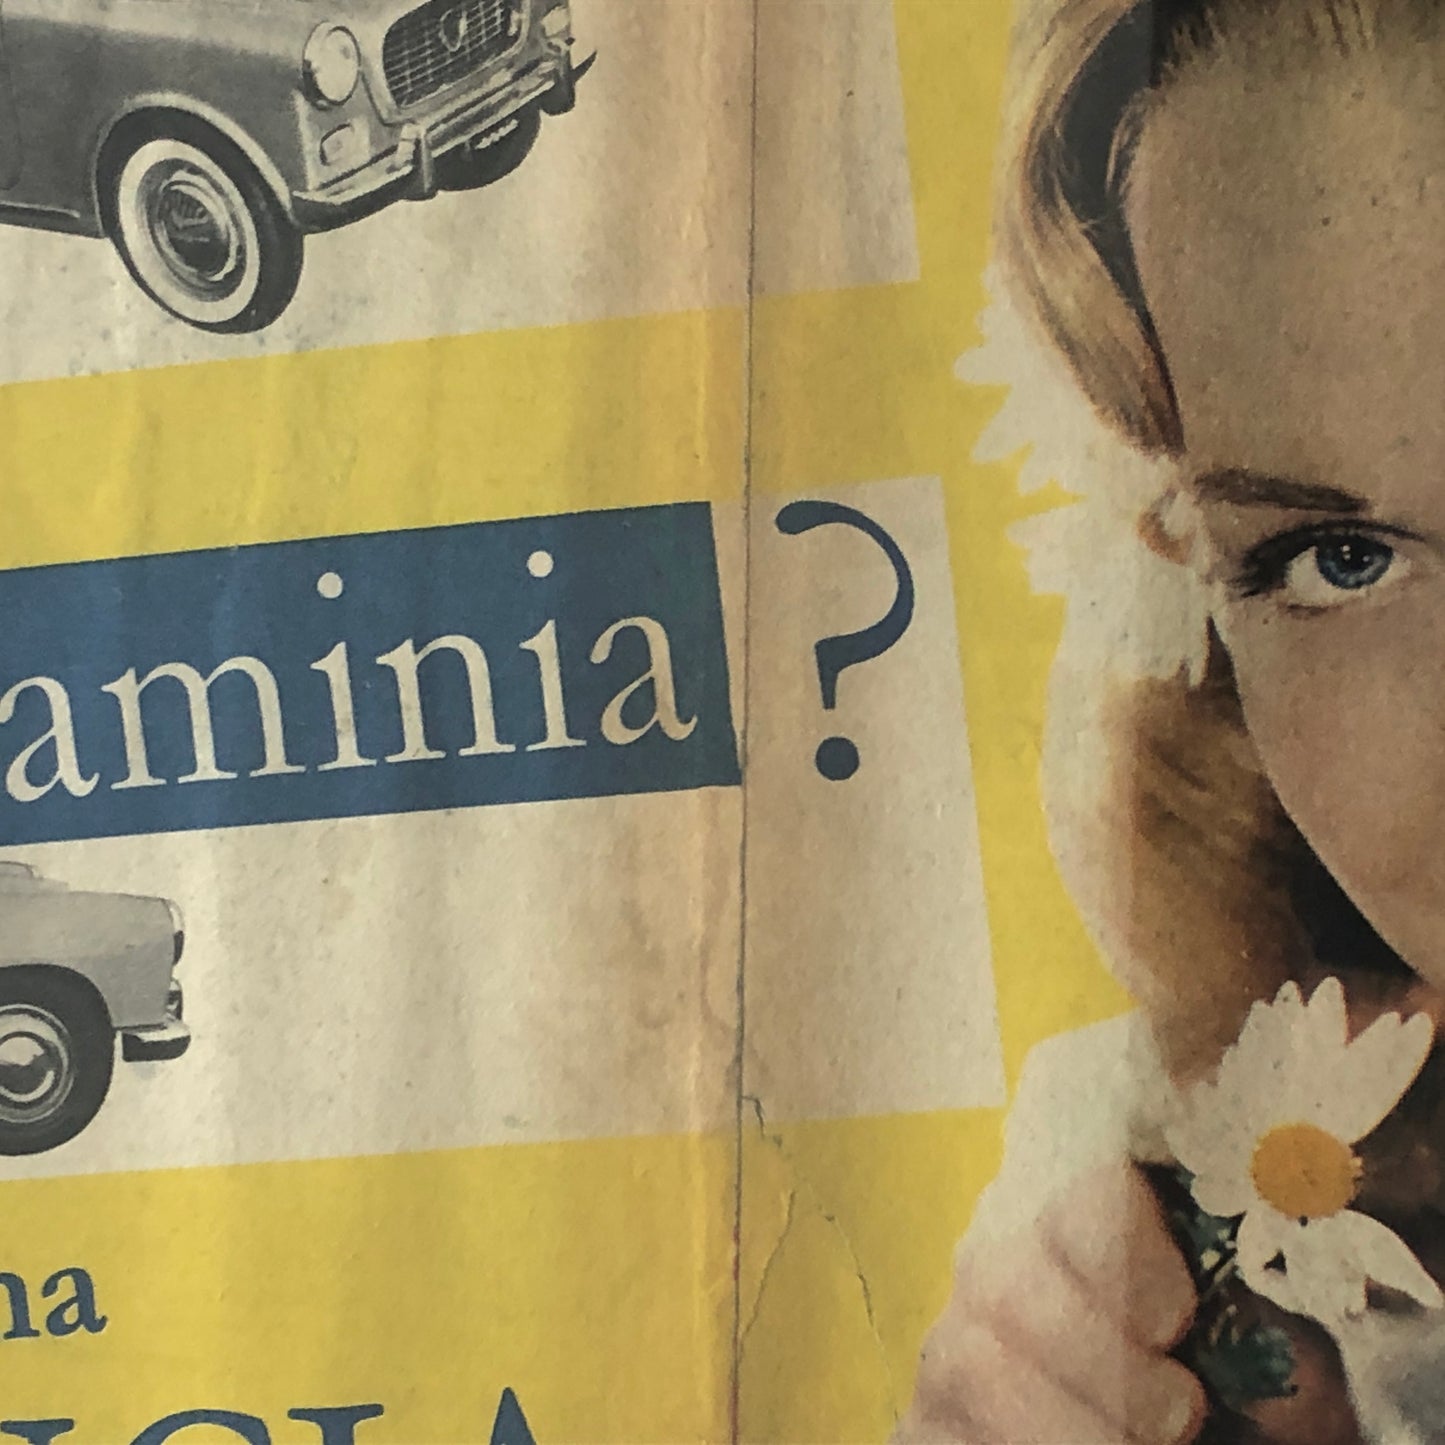 Lancia, Pubblicità Anno 1960 Appia o Flaminia ma Sempre una Lancia